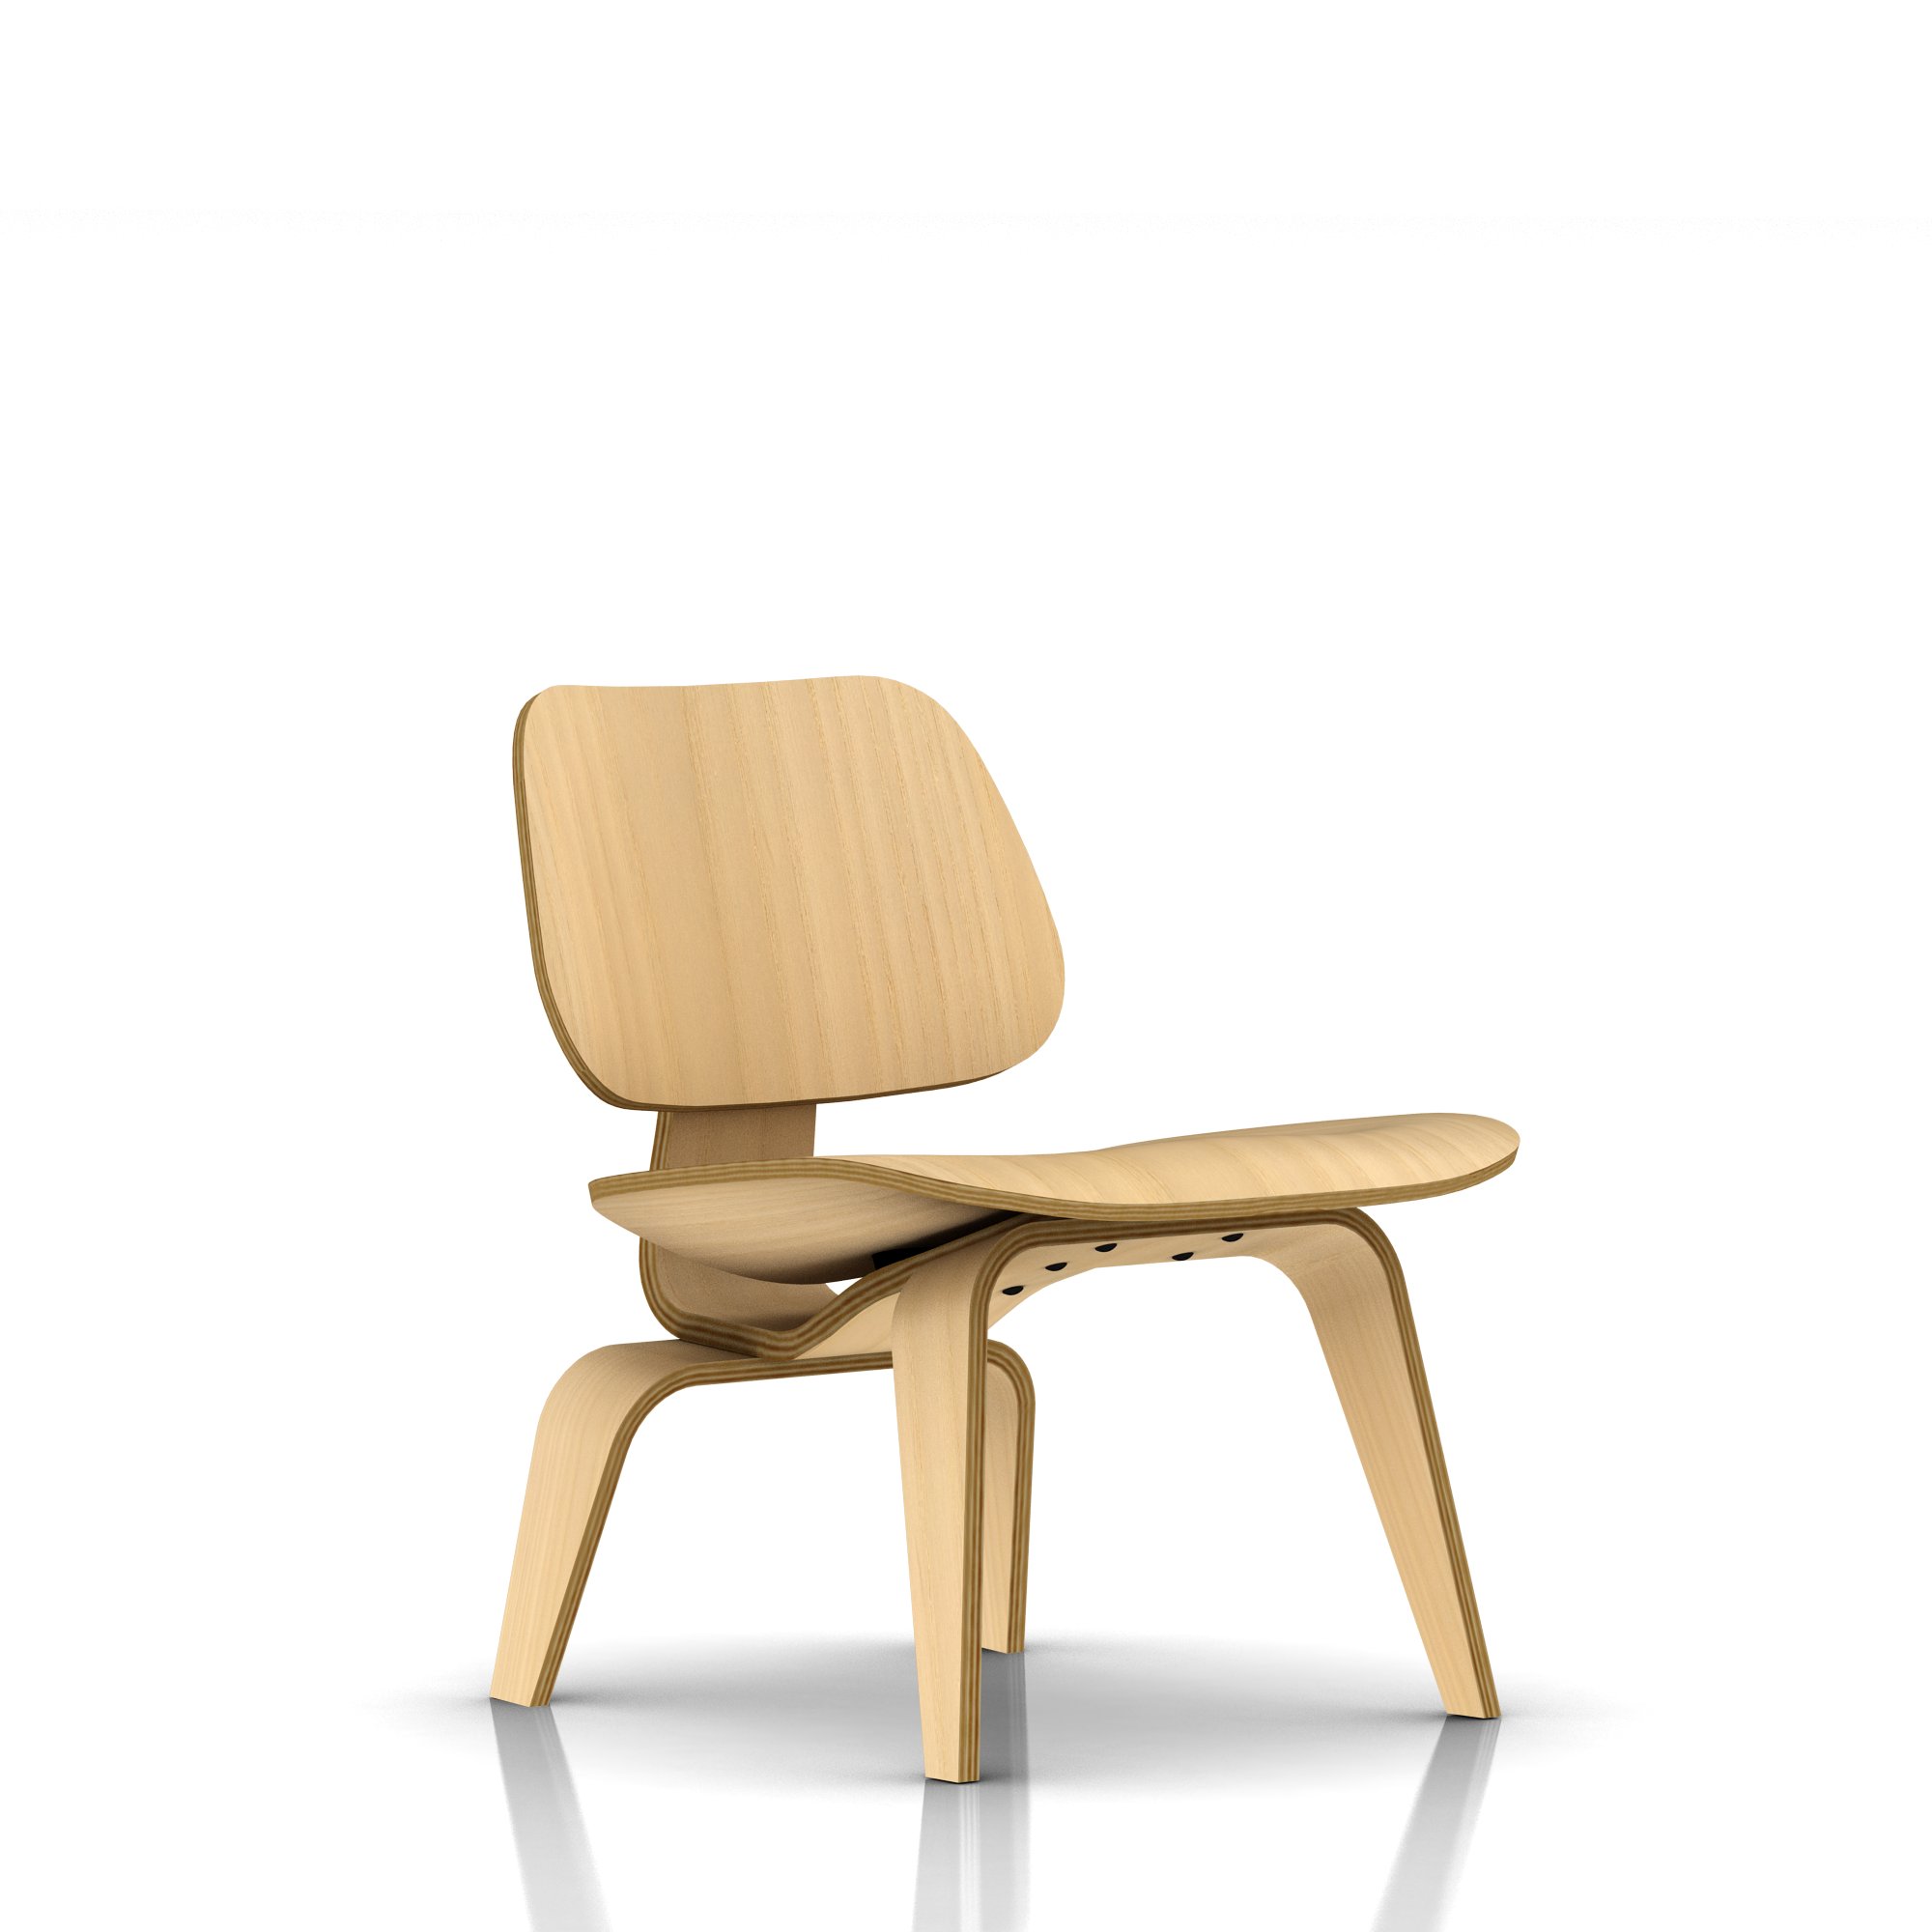 Стул LCW (Lounge Chair Wood). 1946. Herman Miller.